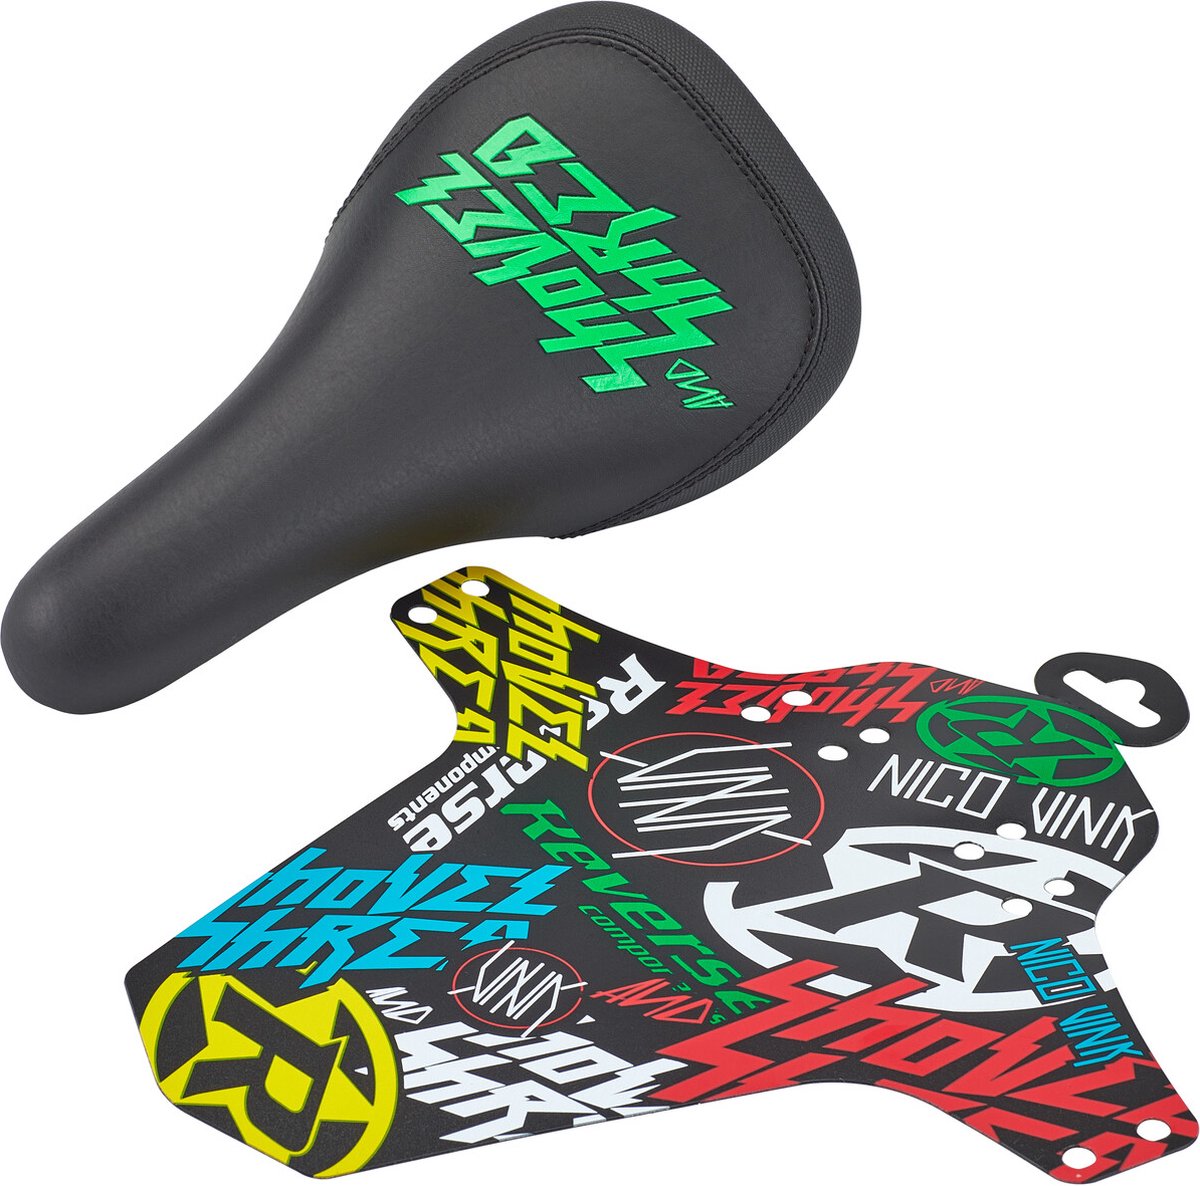 Reverse Nico Vink Shovel & Shred Zadel, zwart/groen